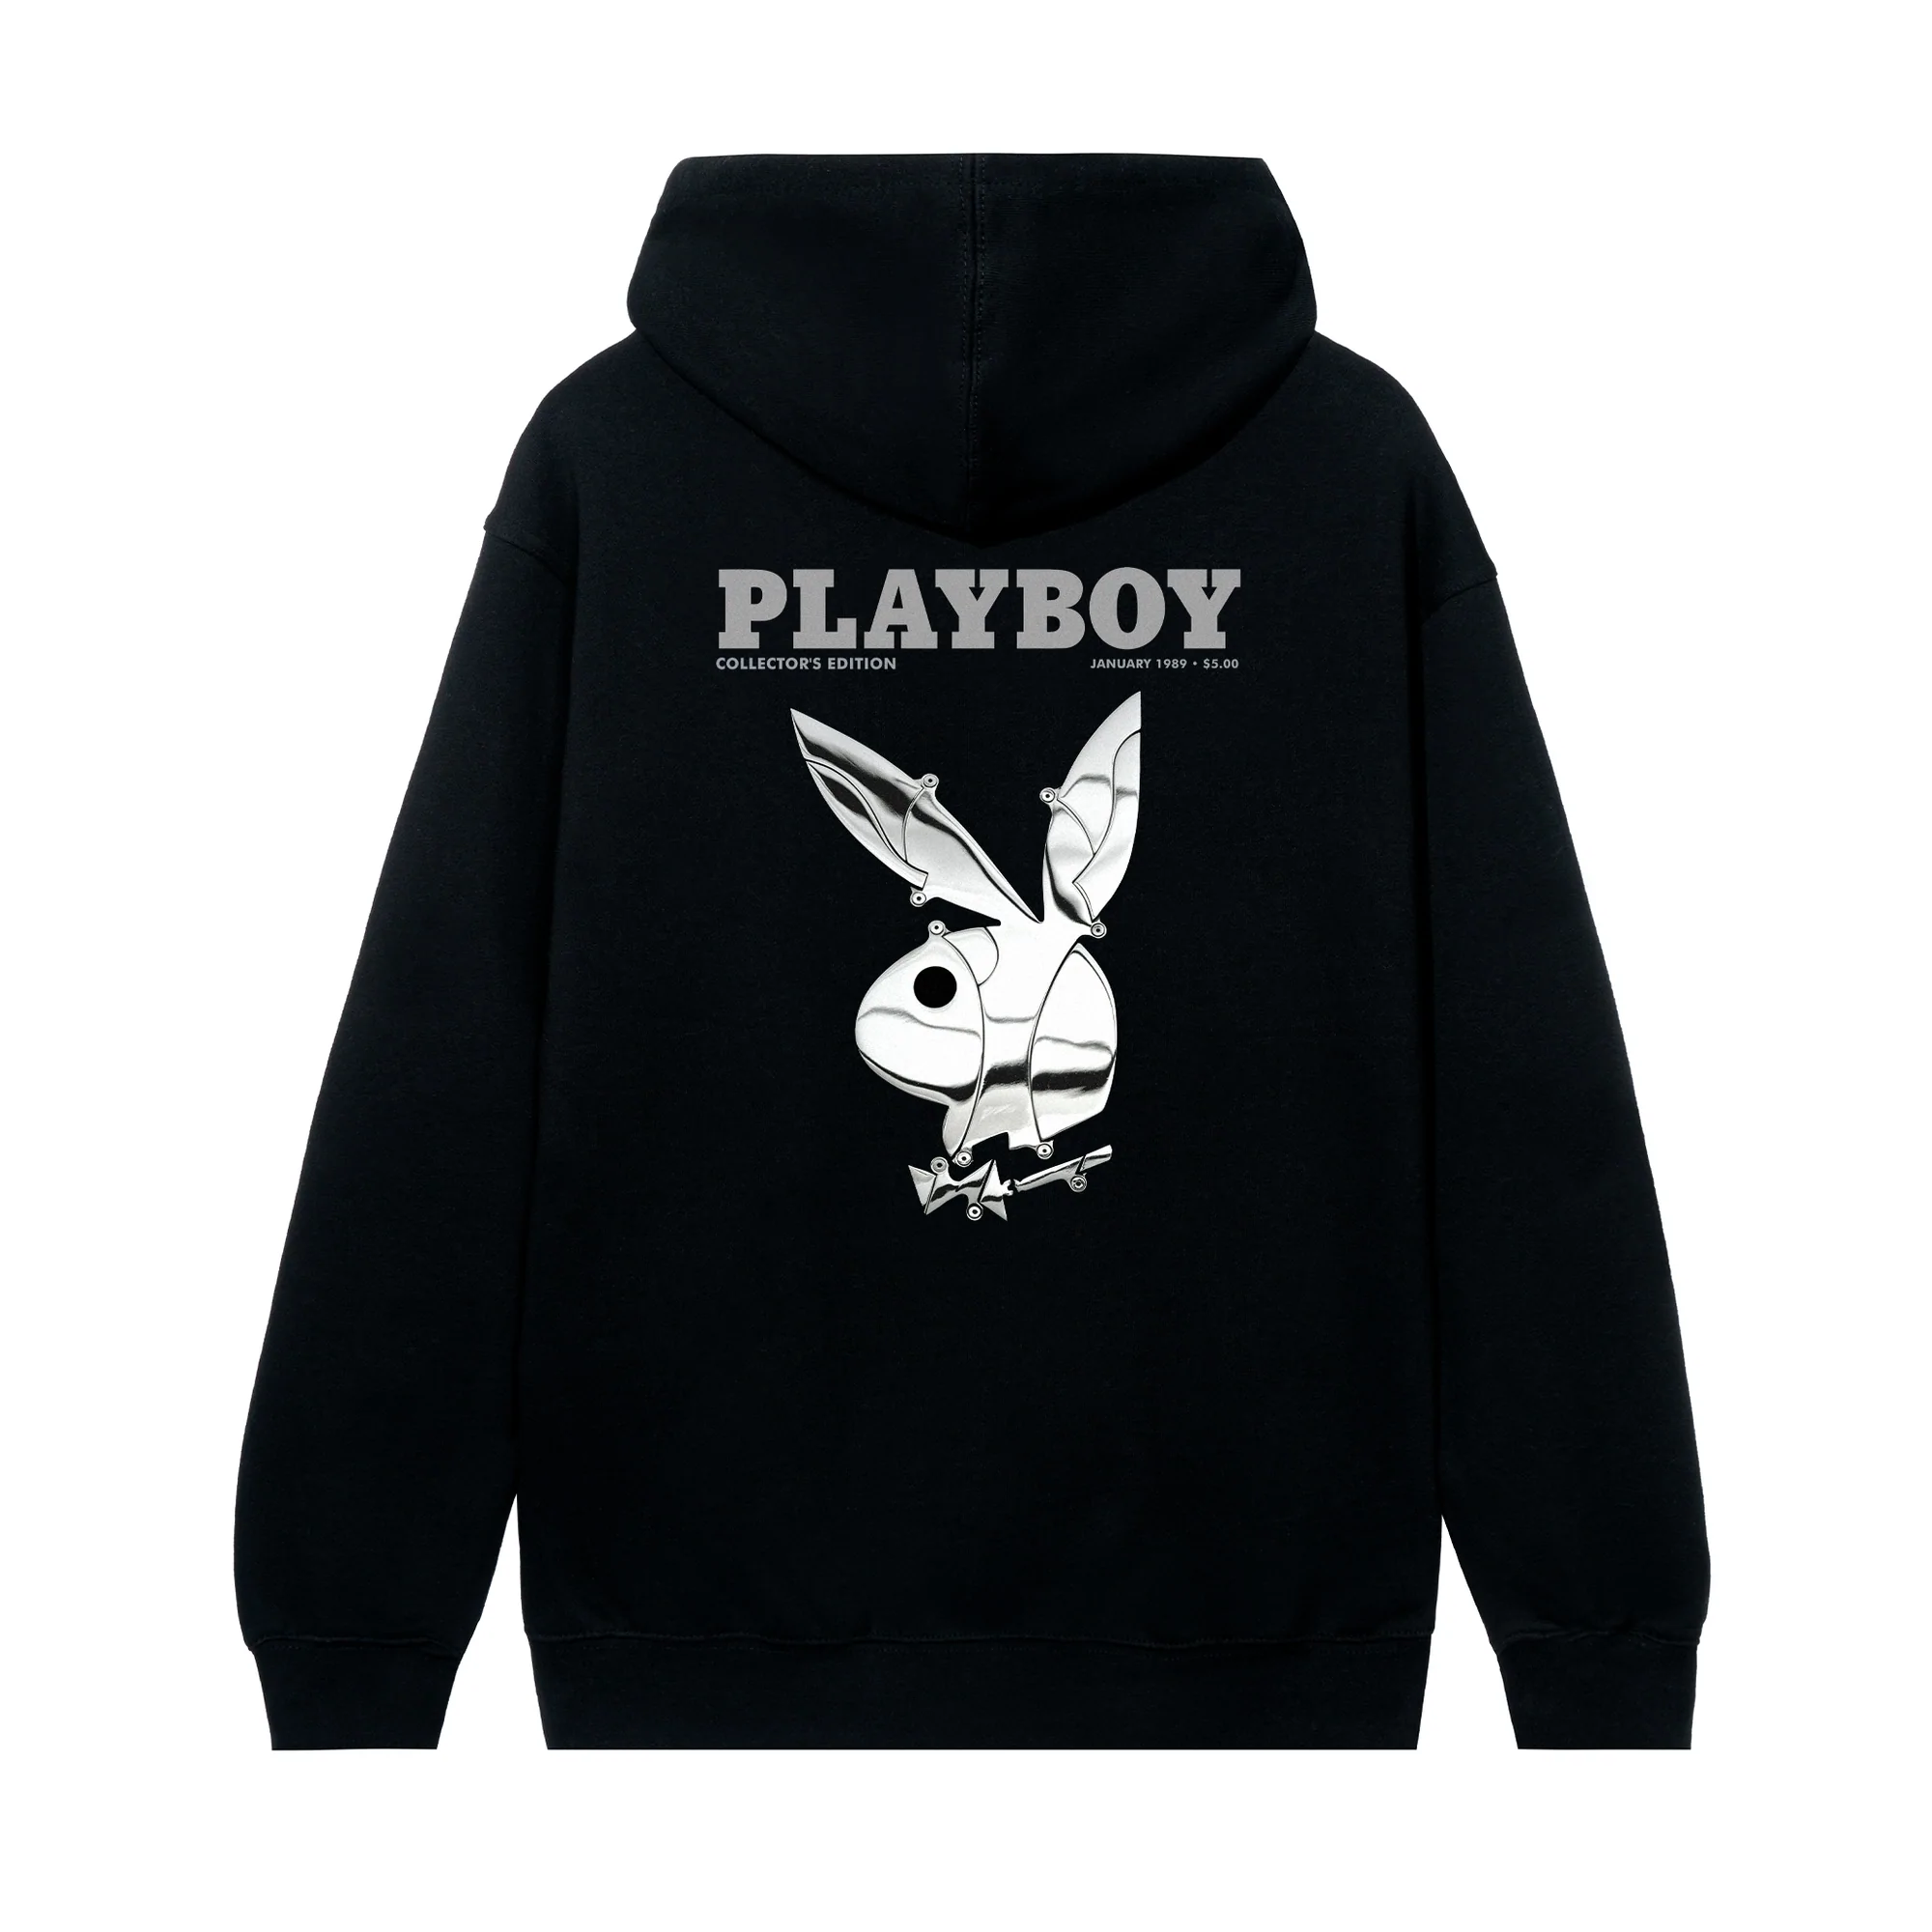 playboy clothing